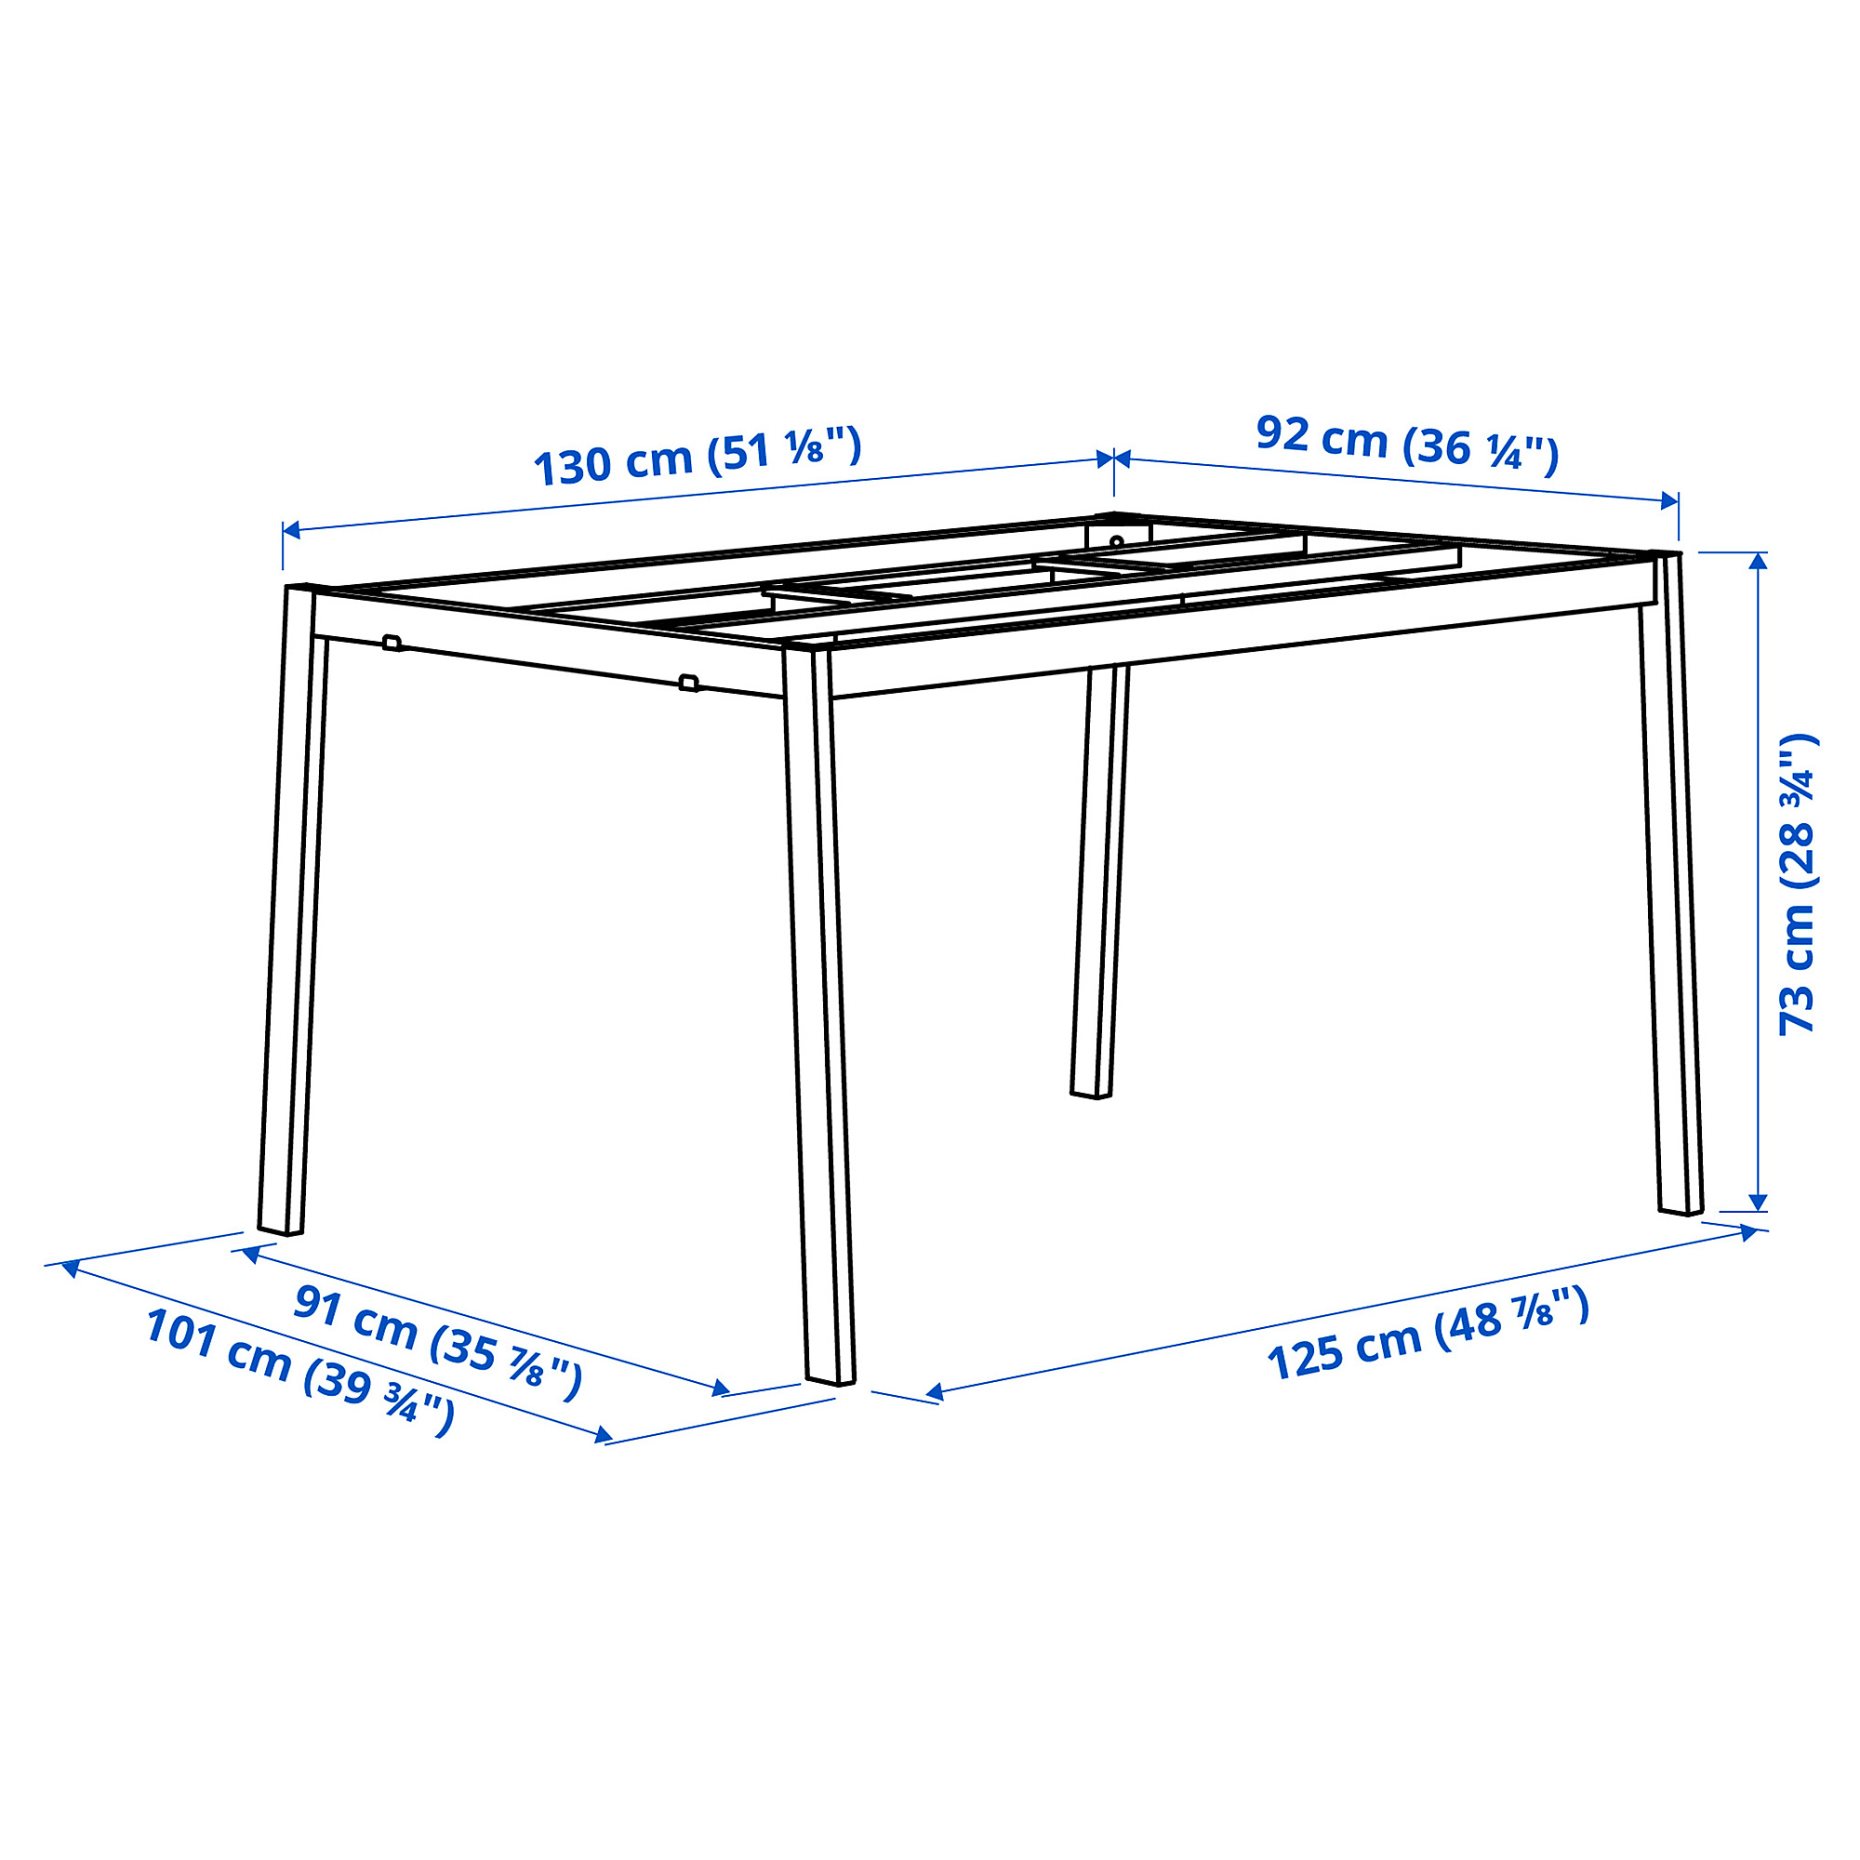 MITTZON, βάση για τραπέζι συνεδριάσεων, 140x108x73 cm, 905.445.25